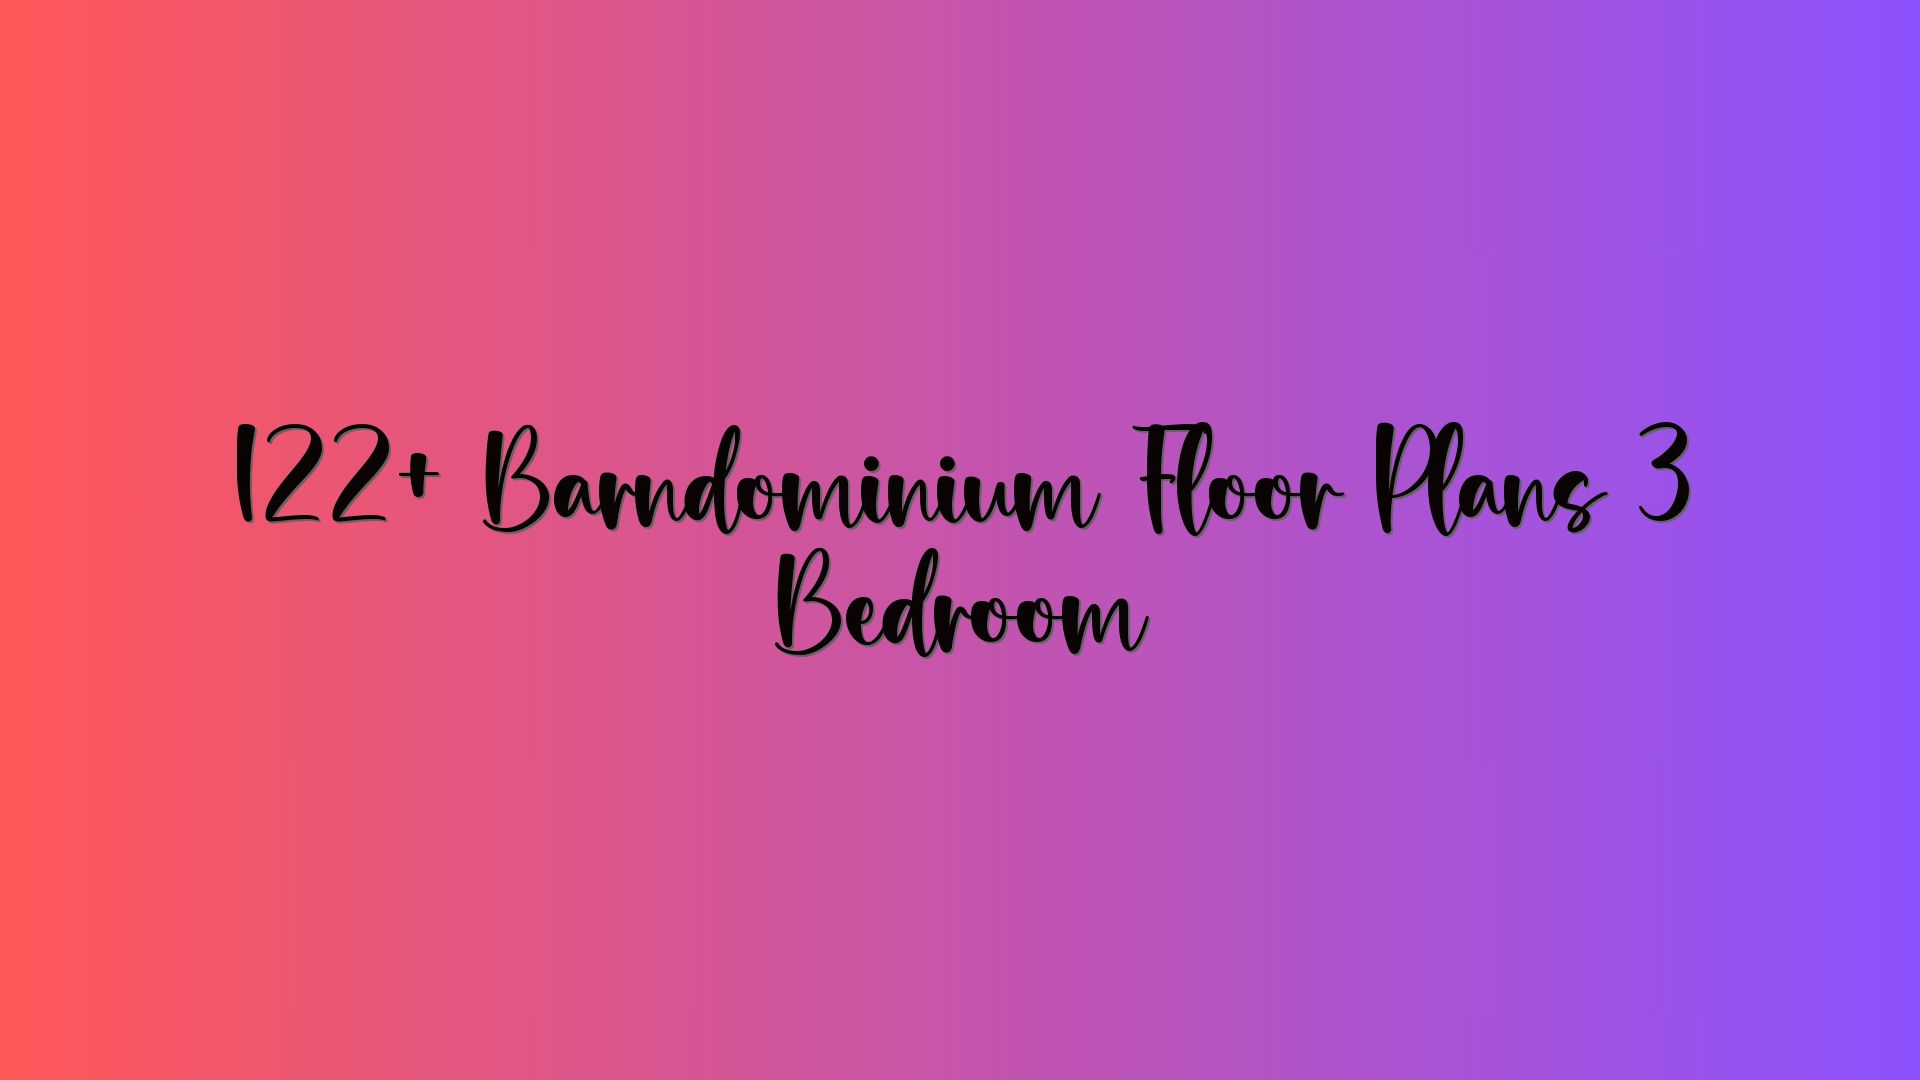 122+ Barndominium Floor Plans 3 Bedroom